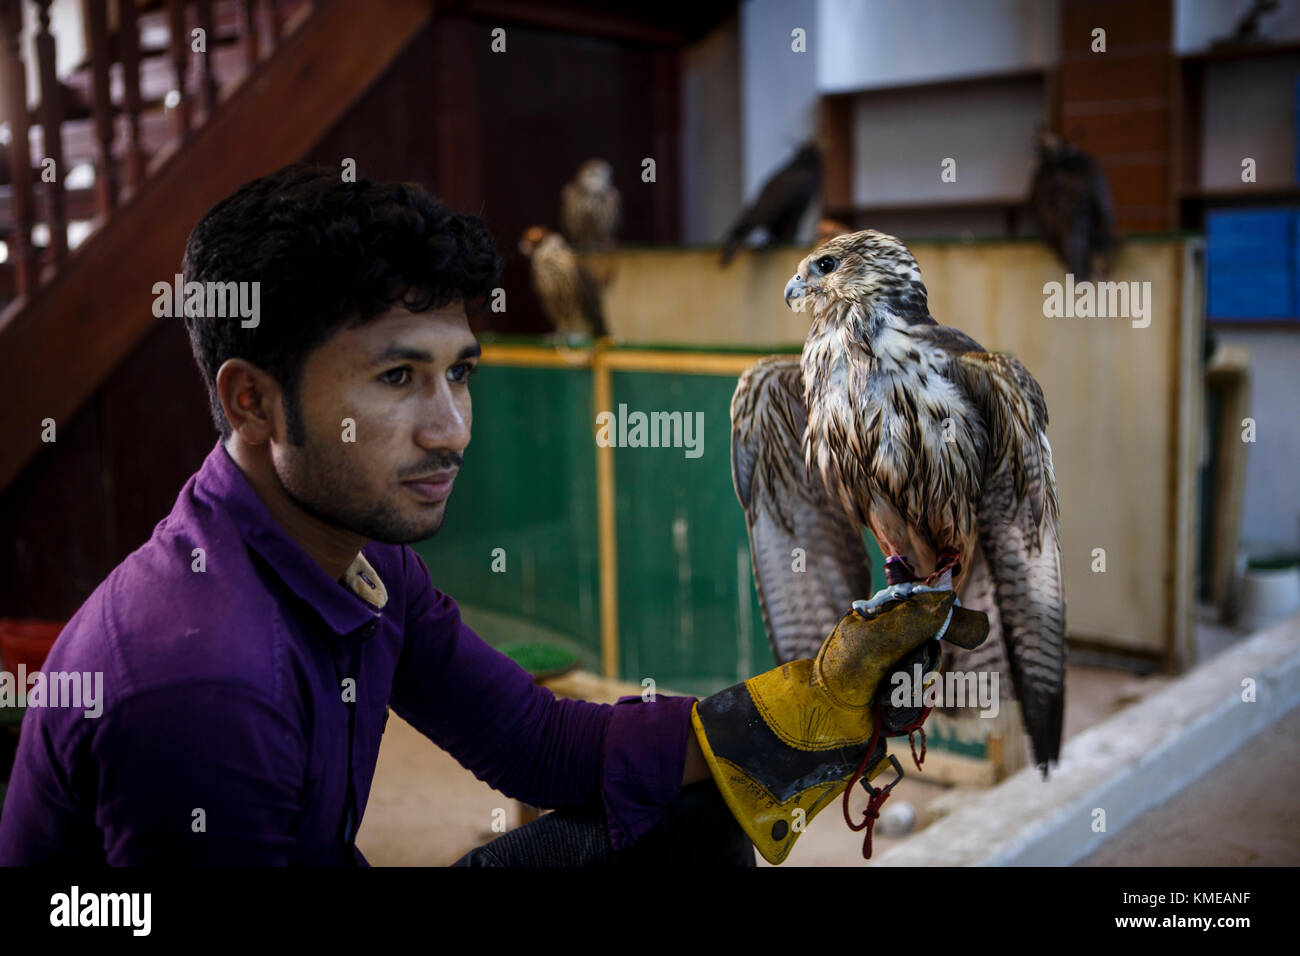 Man holding falcon at falcon market,Falcon Souk,Doha,Qatar Stock Photo